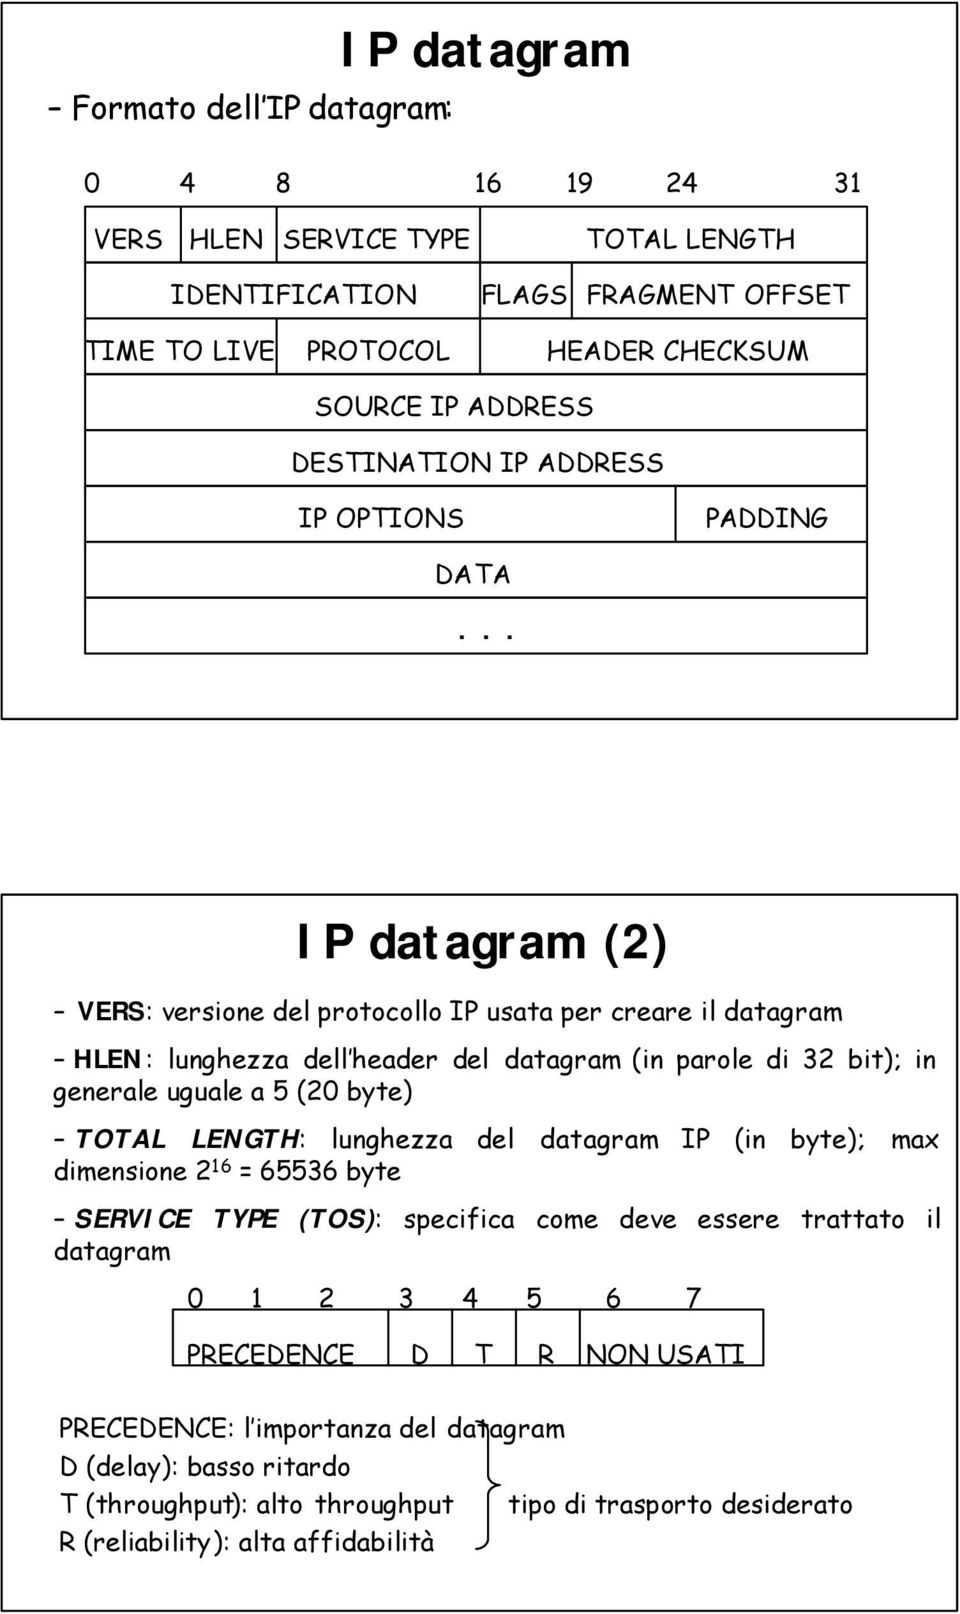 .. IP datagram (2) VERS: versione del protocollo IP usata per creare il datagram HLEN: lunghezza dell header del datagram (in parole di 32 bit); in generale uguale a 5 (20 byte) TOTAL